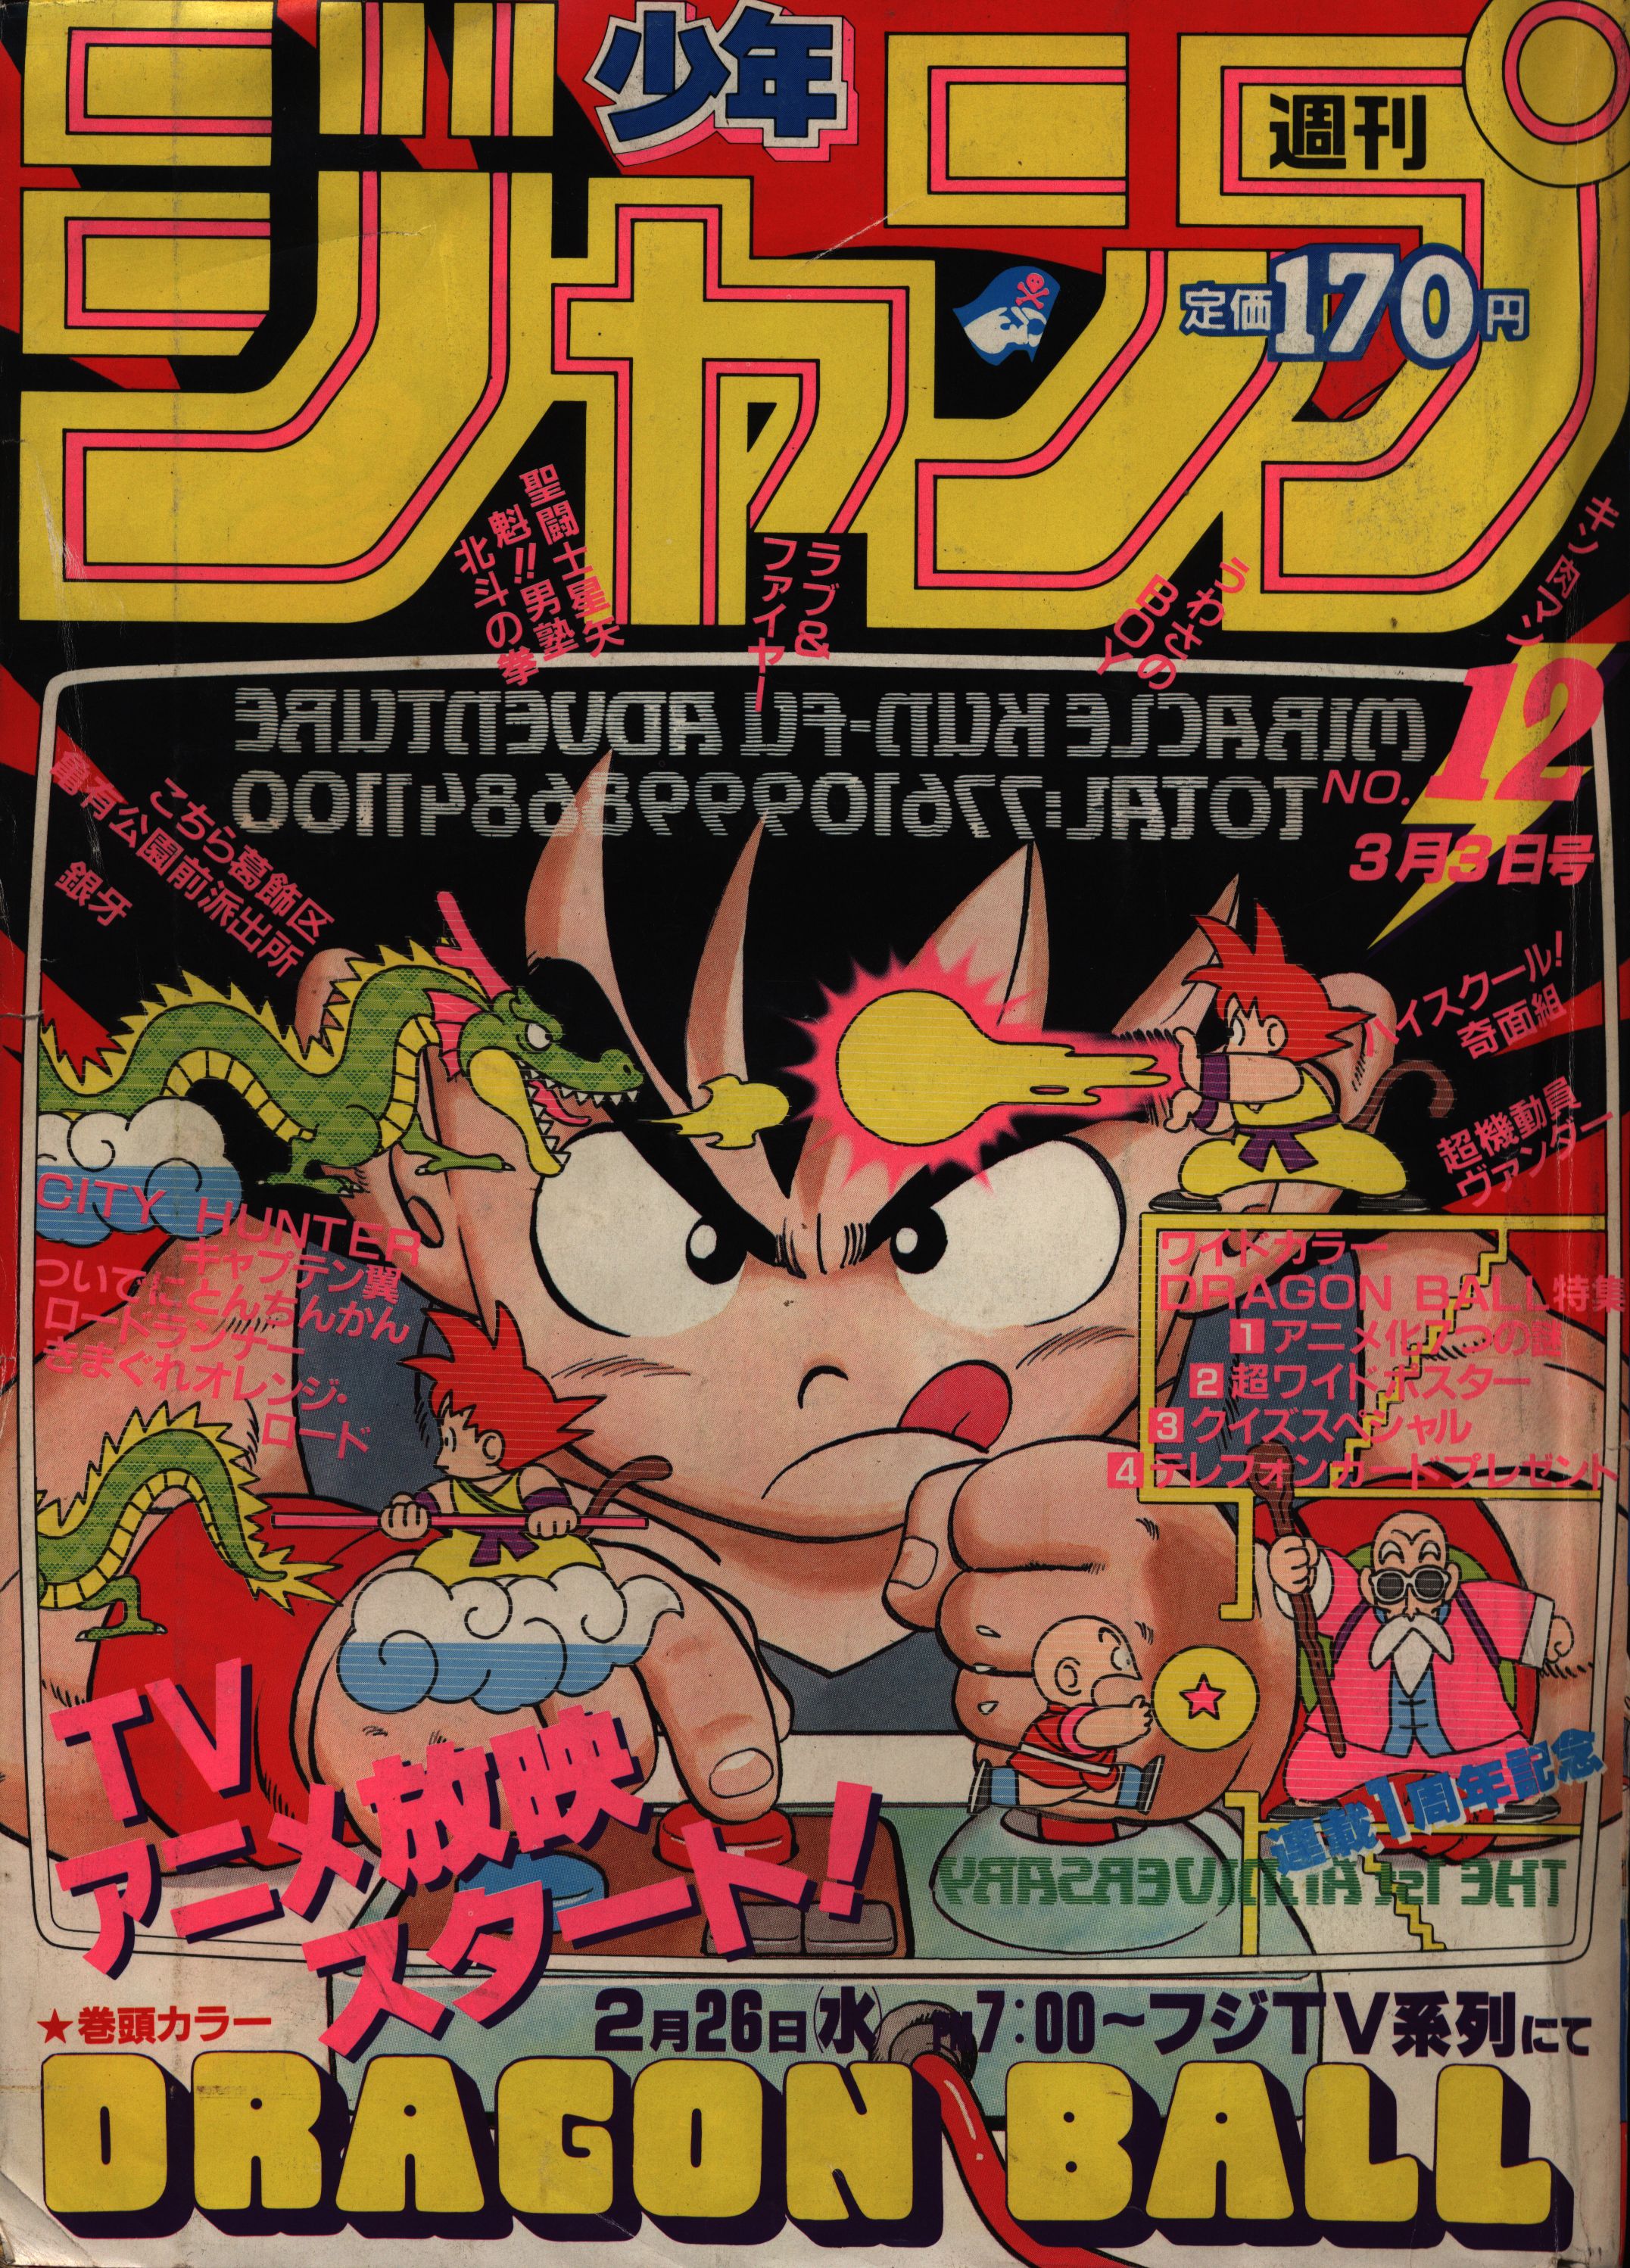 集英社 1986年(昭和61年)の漫画雑誌 週刊少年ジャンプ 1986年(昭和61年